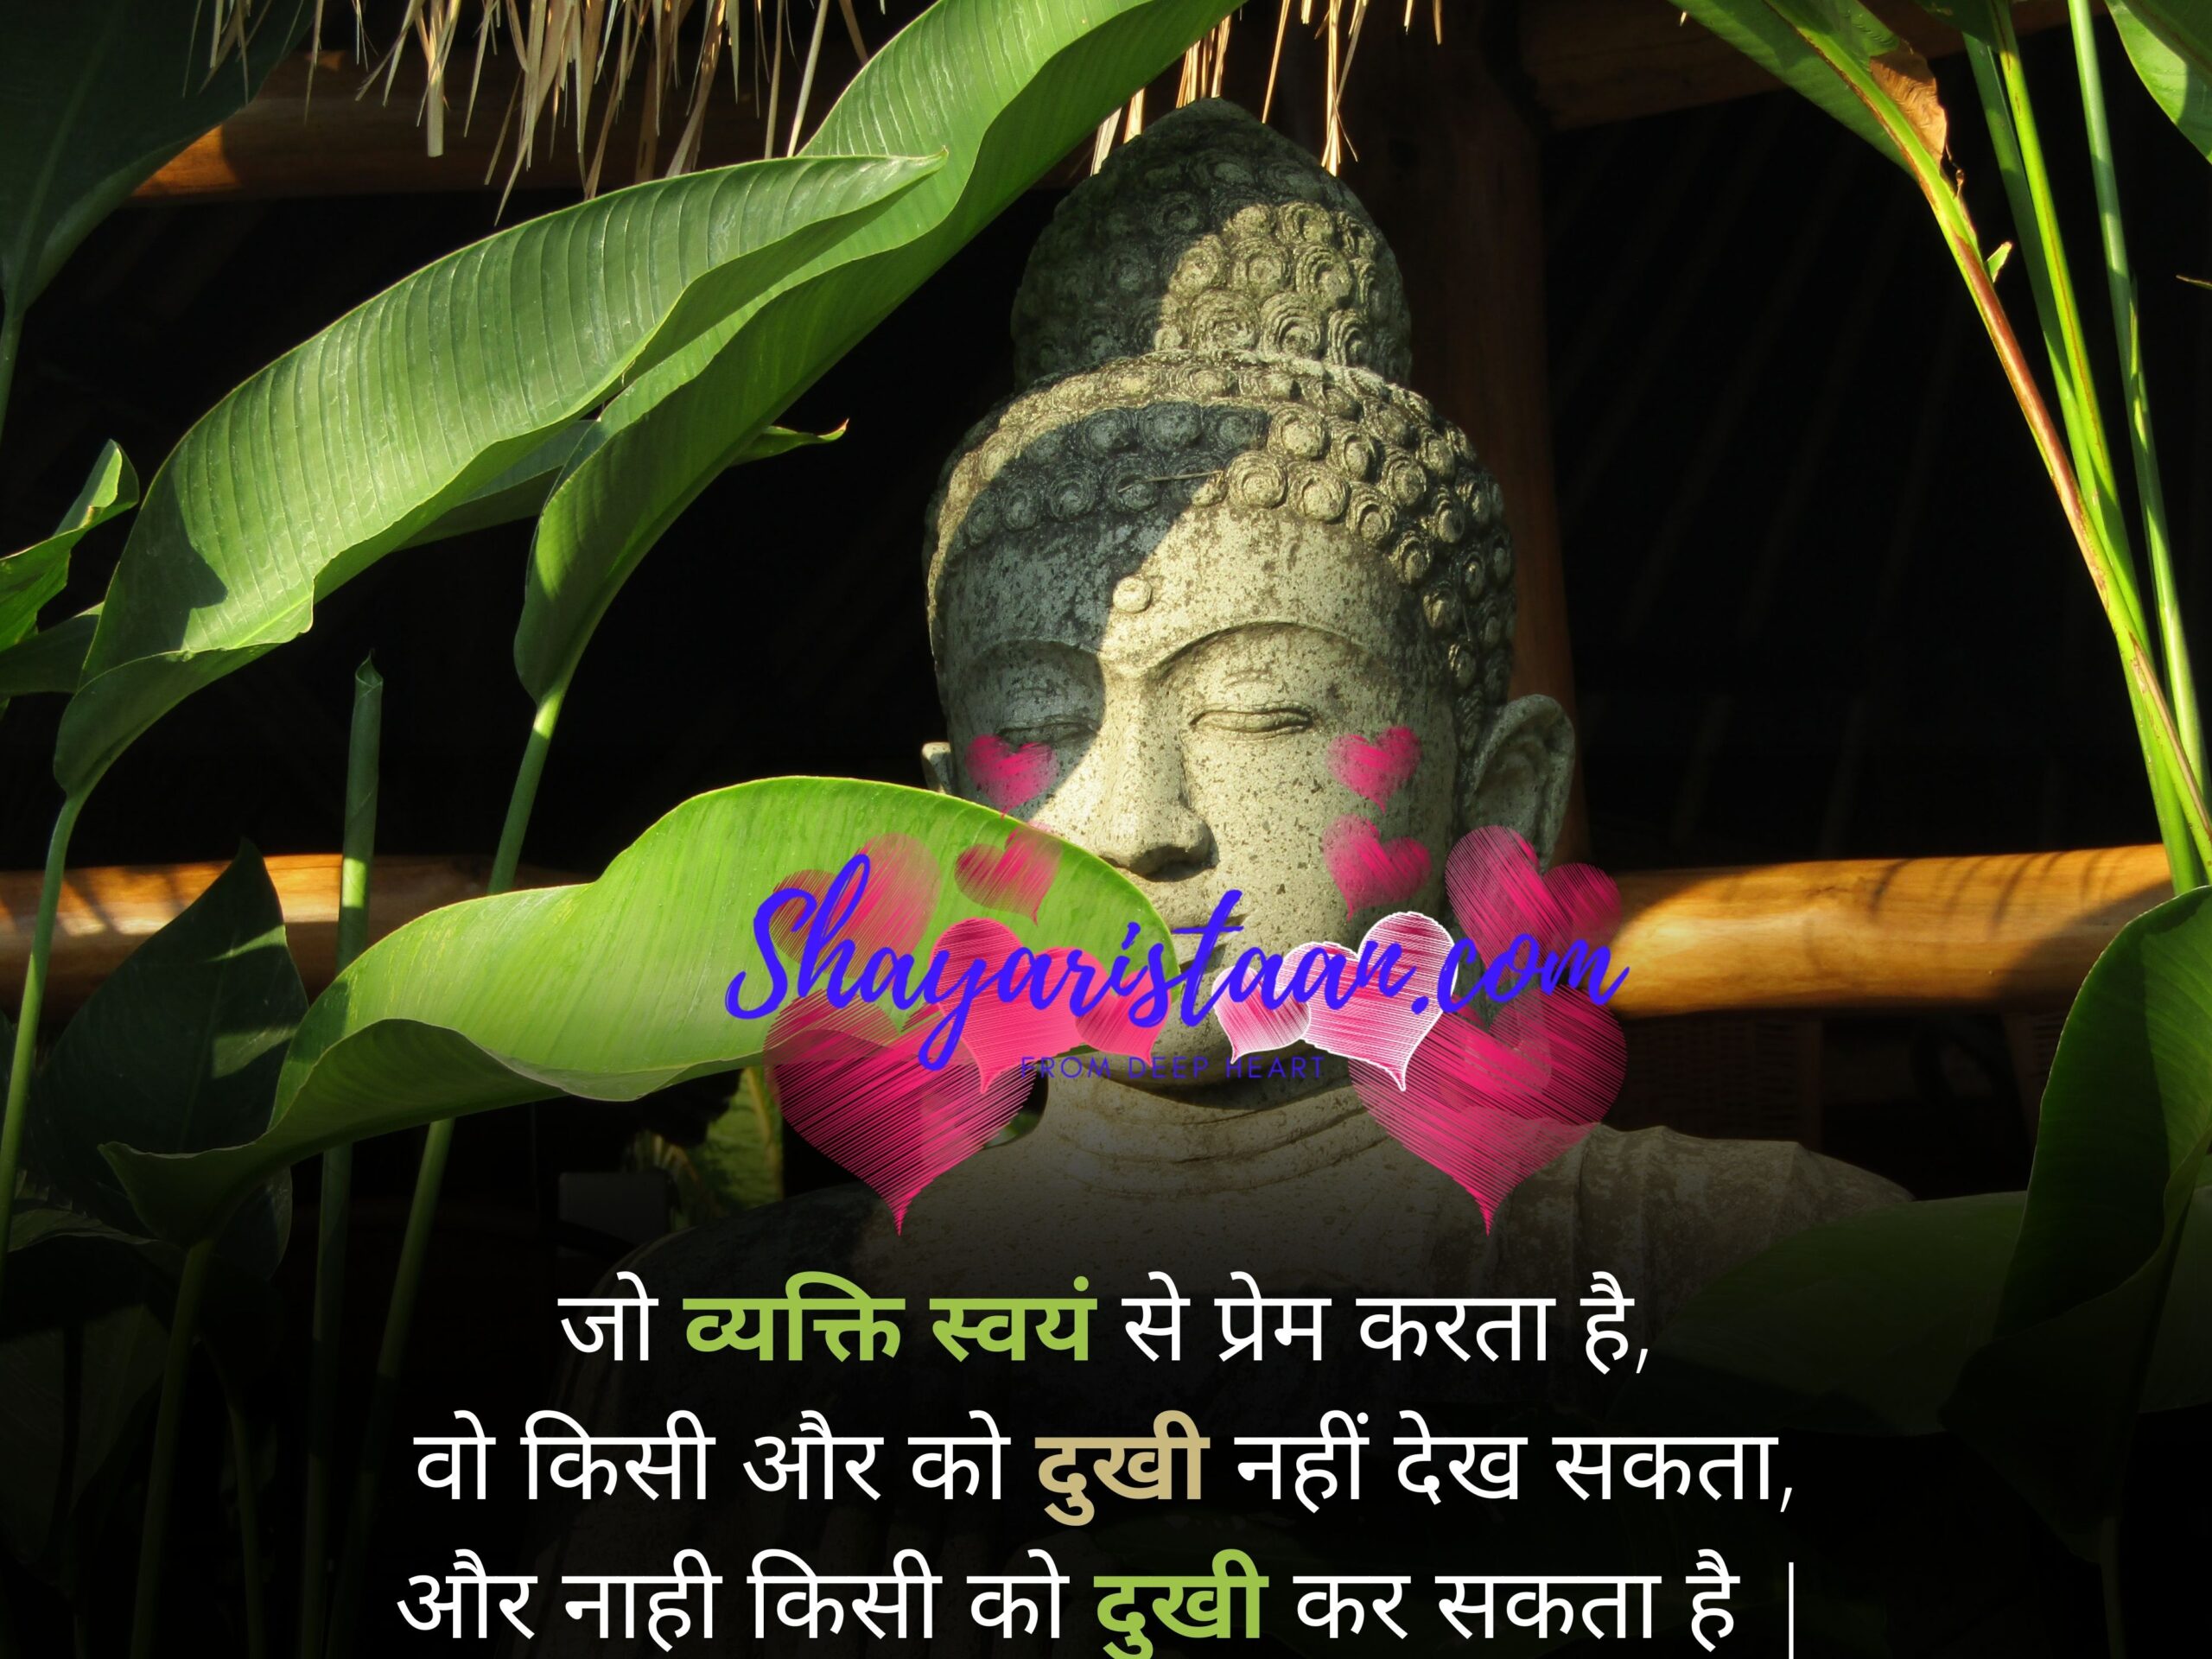  buddha quotes | जो व्यक्ति स्वयं से प्रेम करता है, वो किसी और को दुखी नहीं देख सकता, और नाही किसी को दुखी कर सकता है |